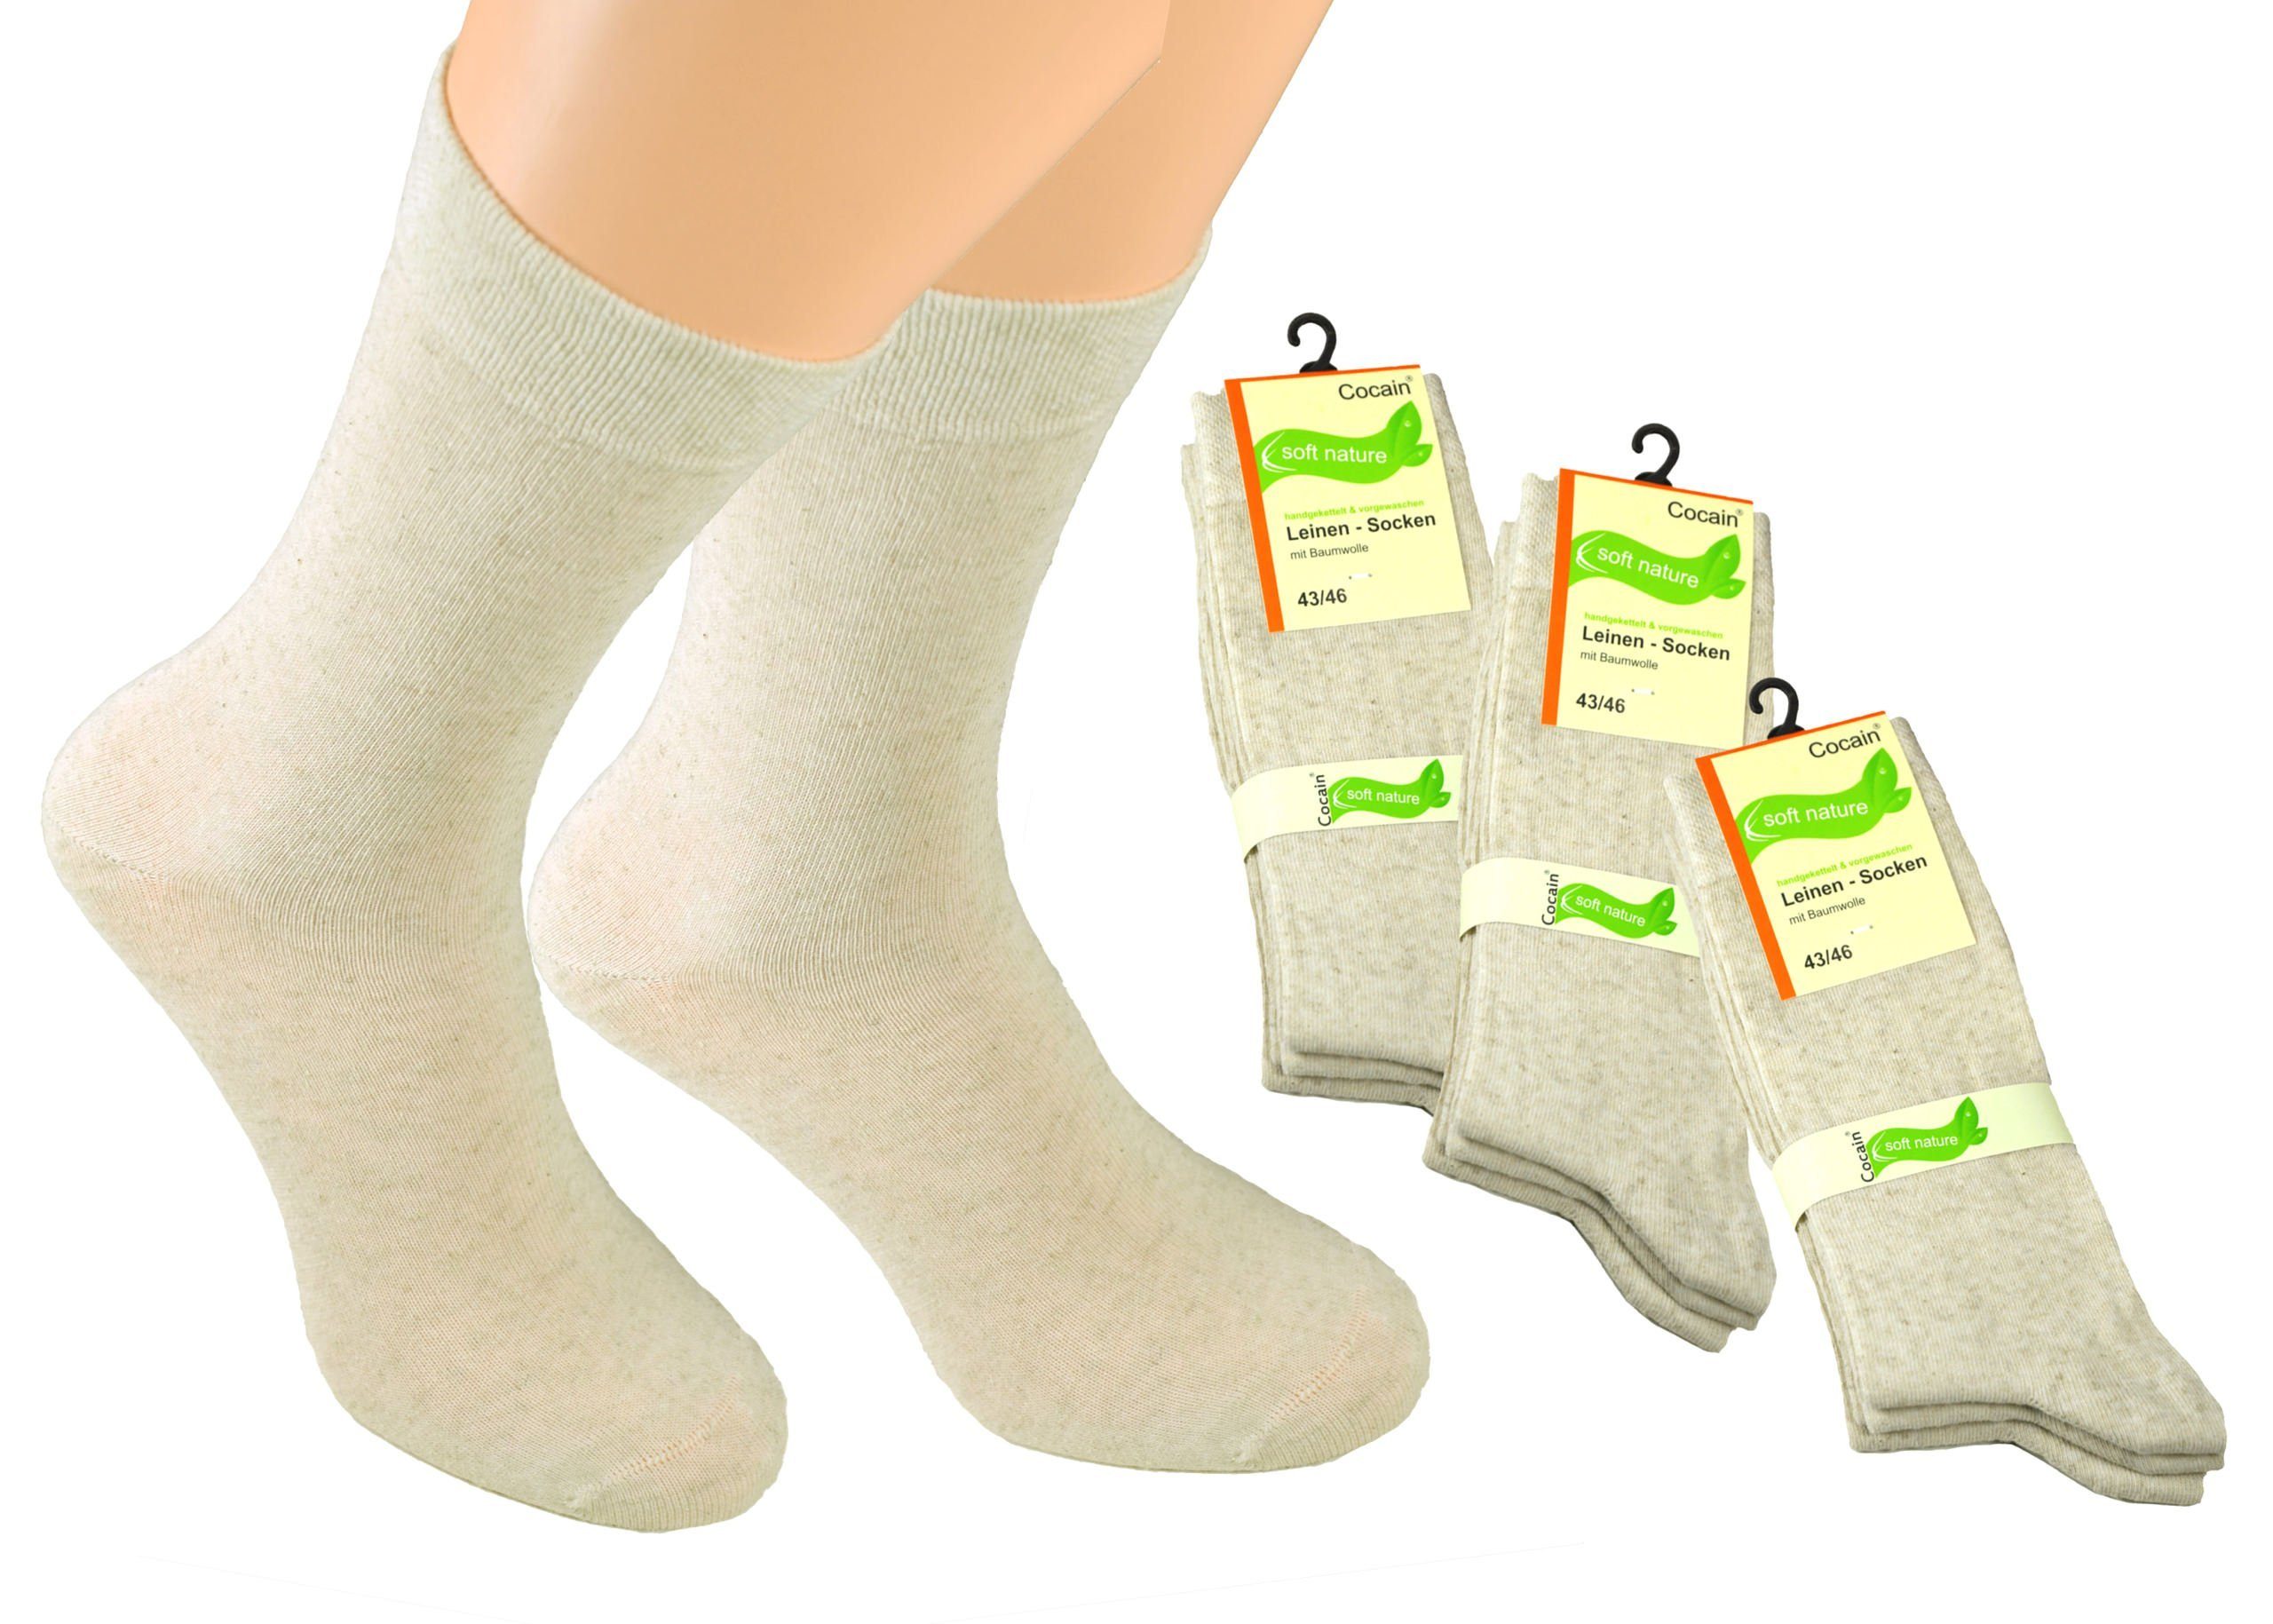 Cocain underwear Funktionssocken Leinen Socken auch in Übergröße (6-Paar)  feuchtigkeitsregulierend